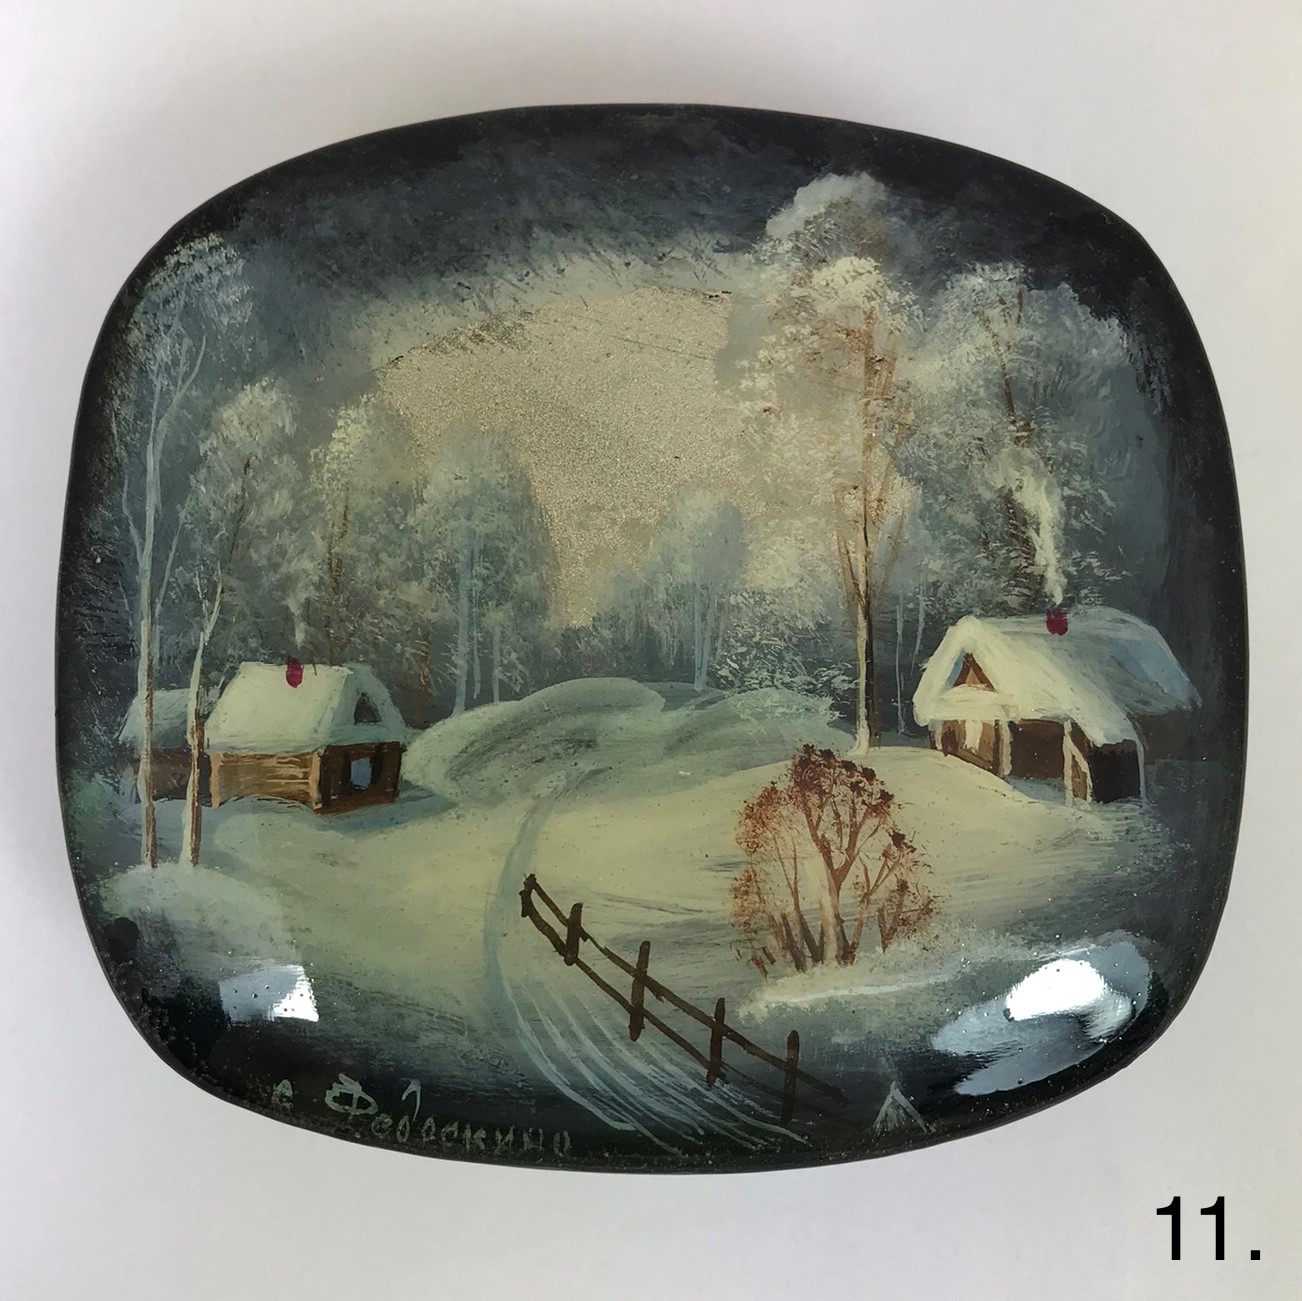 Лаковая миниатюра Федоскино, шкатулка "Зима" автор Л.Молодцов 90х80х30 мм